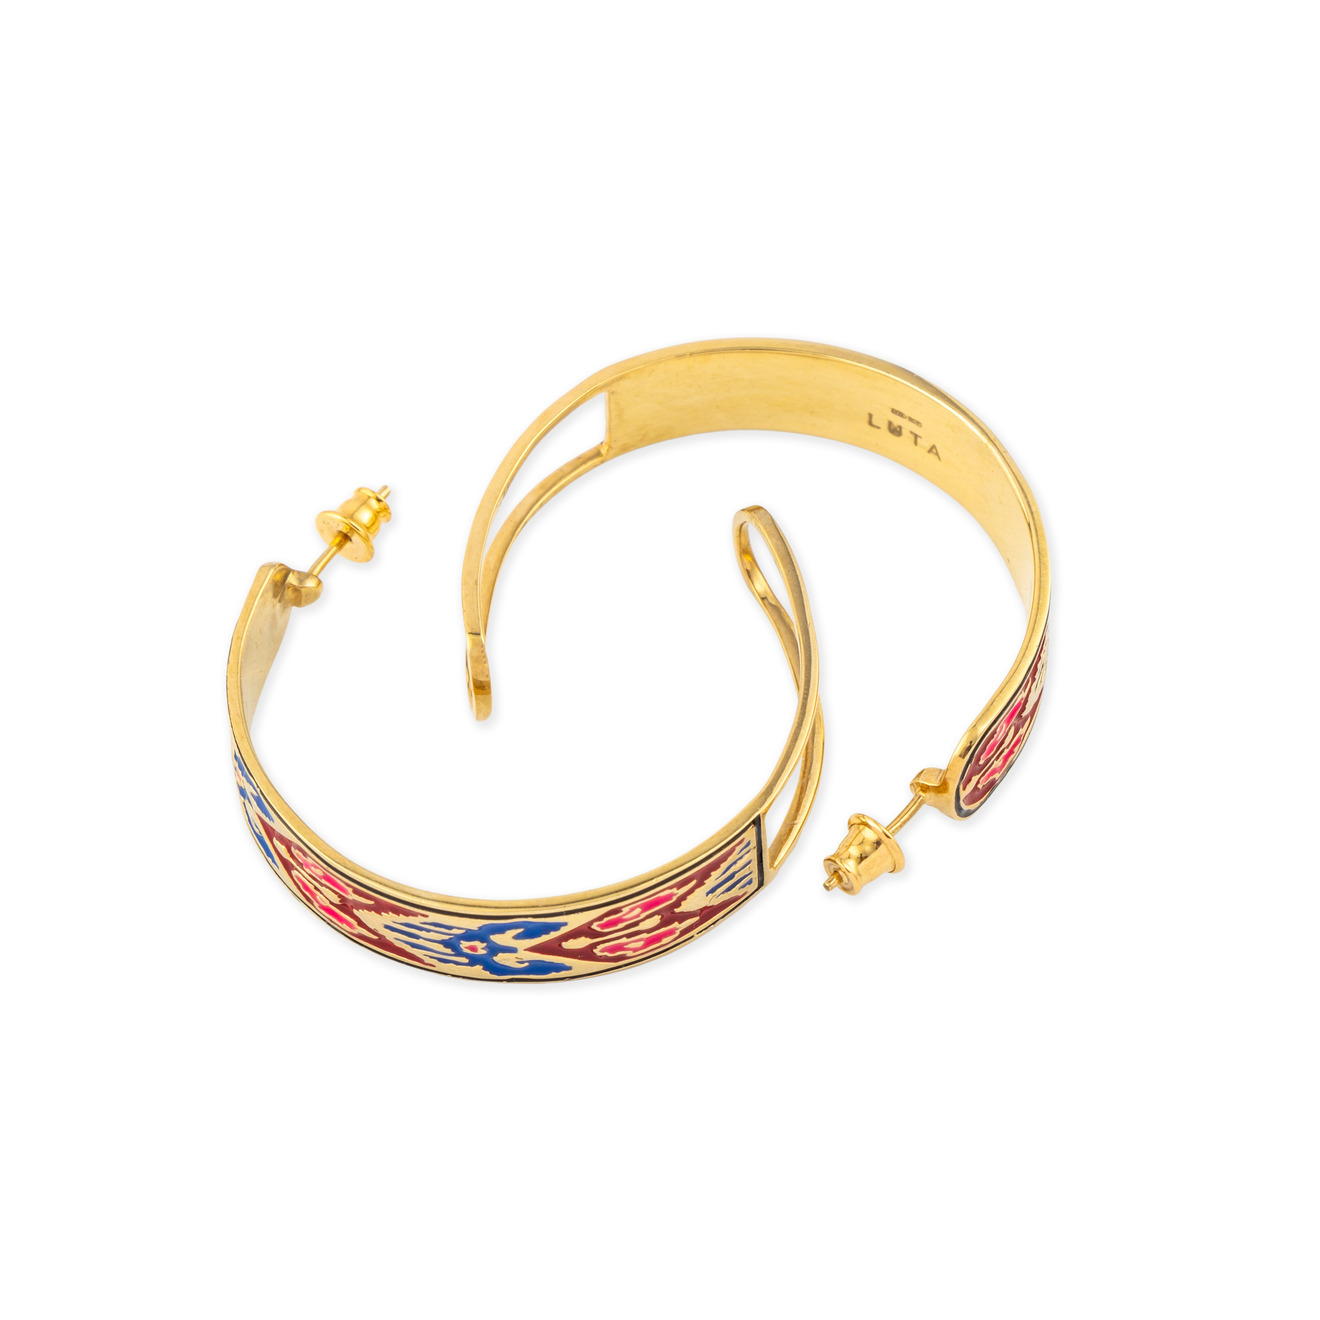 LUTA Jewelry Серебряные серьги-хупы Марокко с позолотой, розовой и синей эмалью